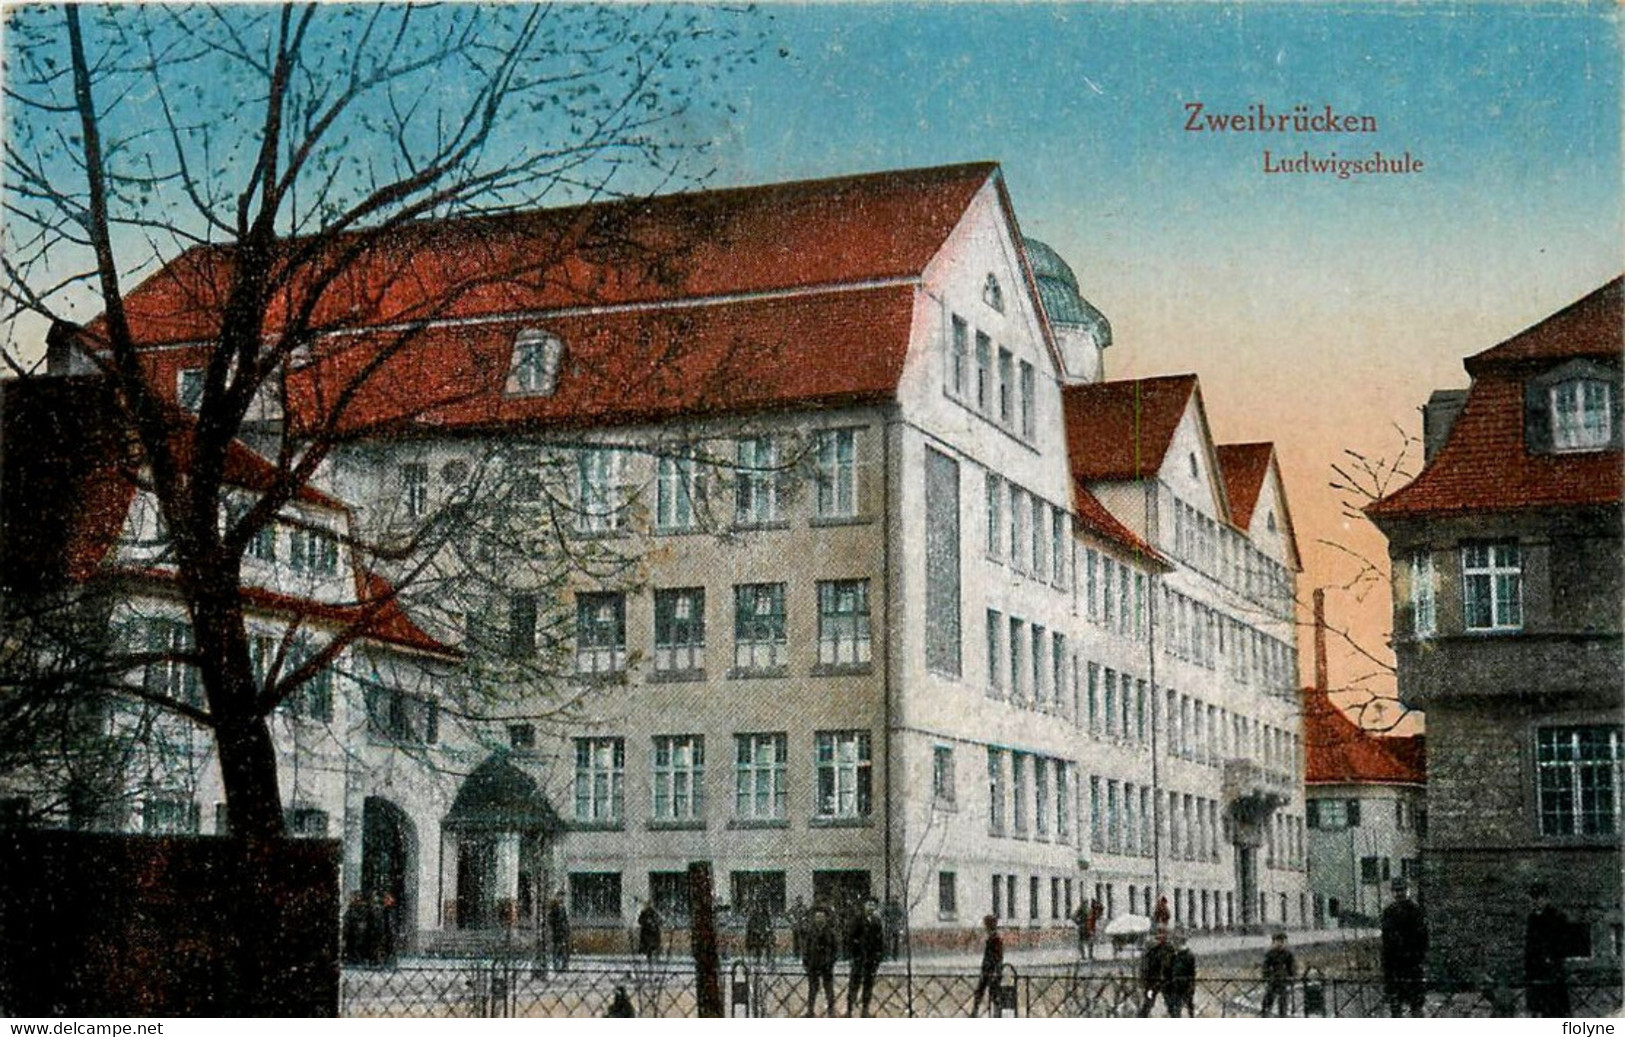 Zweibruecken - Zweibrücken - Deux Ponts - Ludwigschule - école School - Allemagne Germany - Zweibrücken